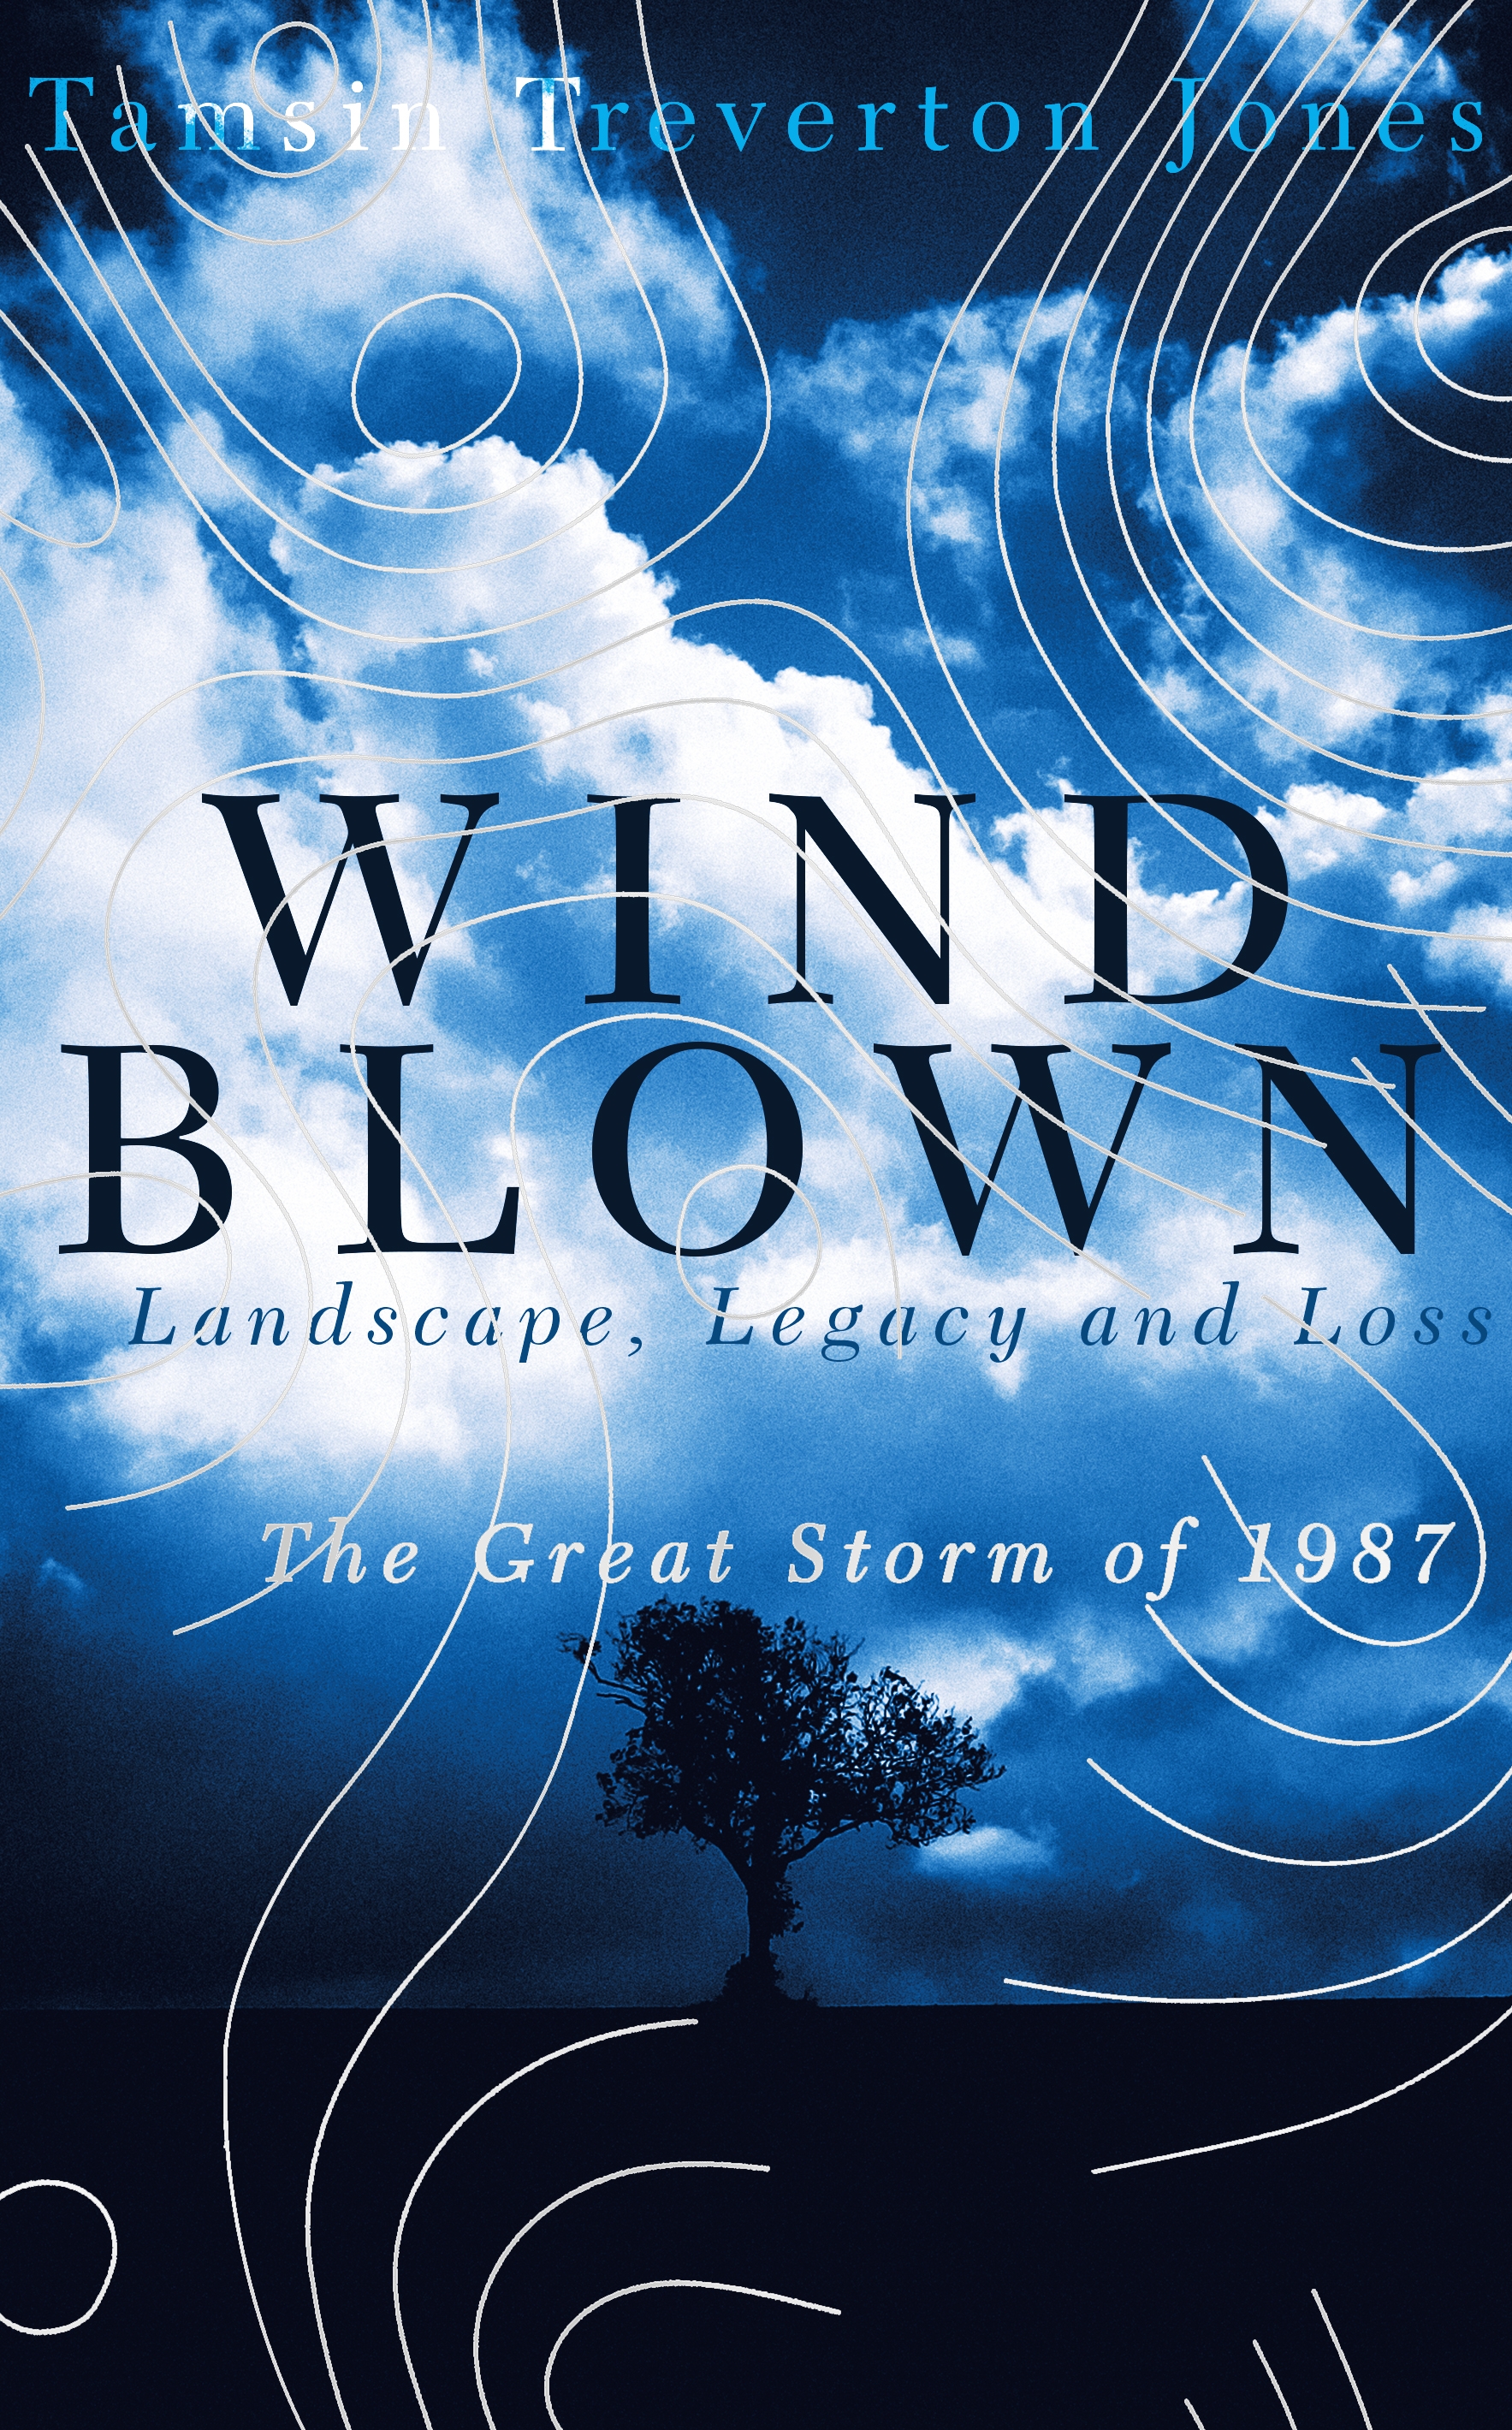 Windblown by Tamsin Treverton Jones | Hachette UK